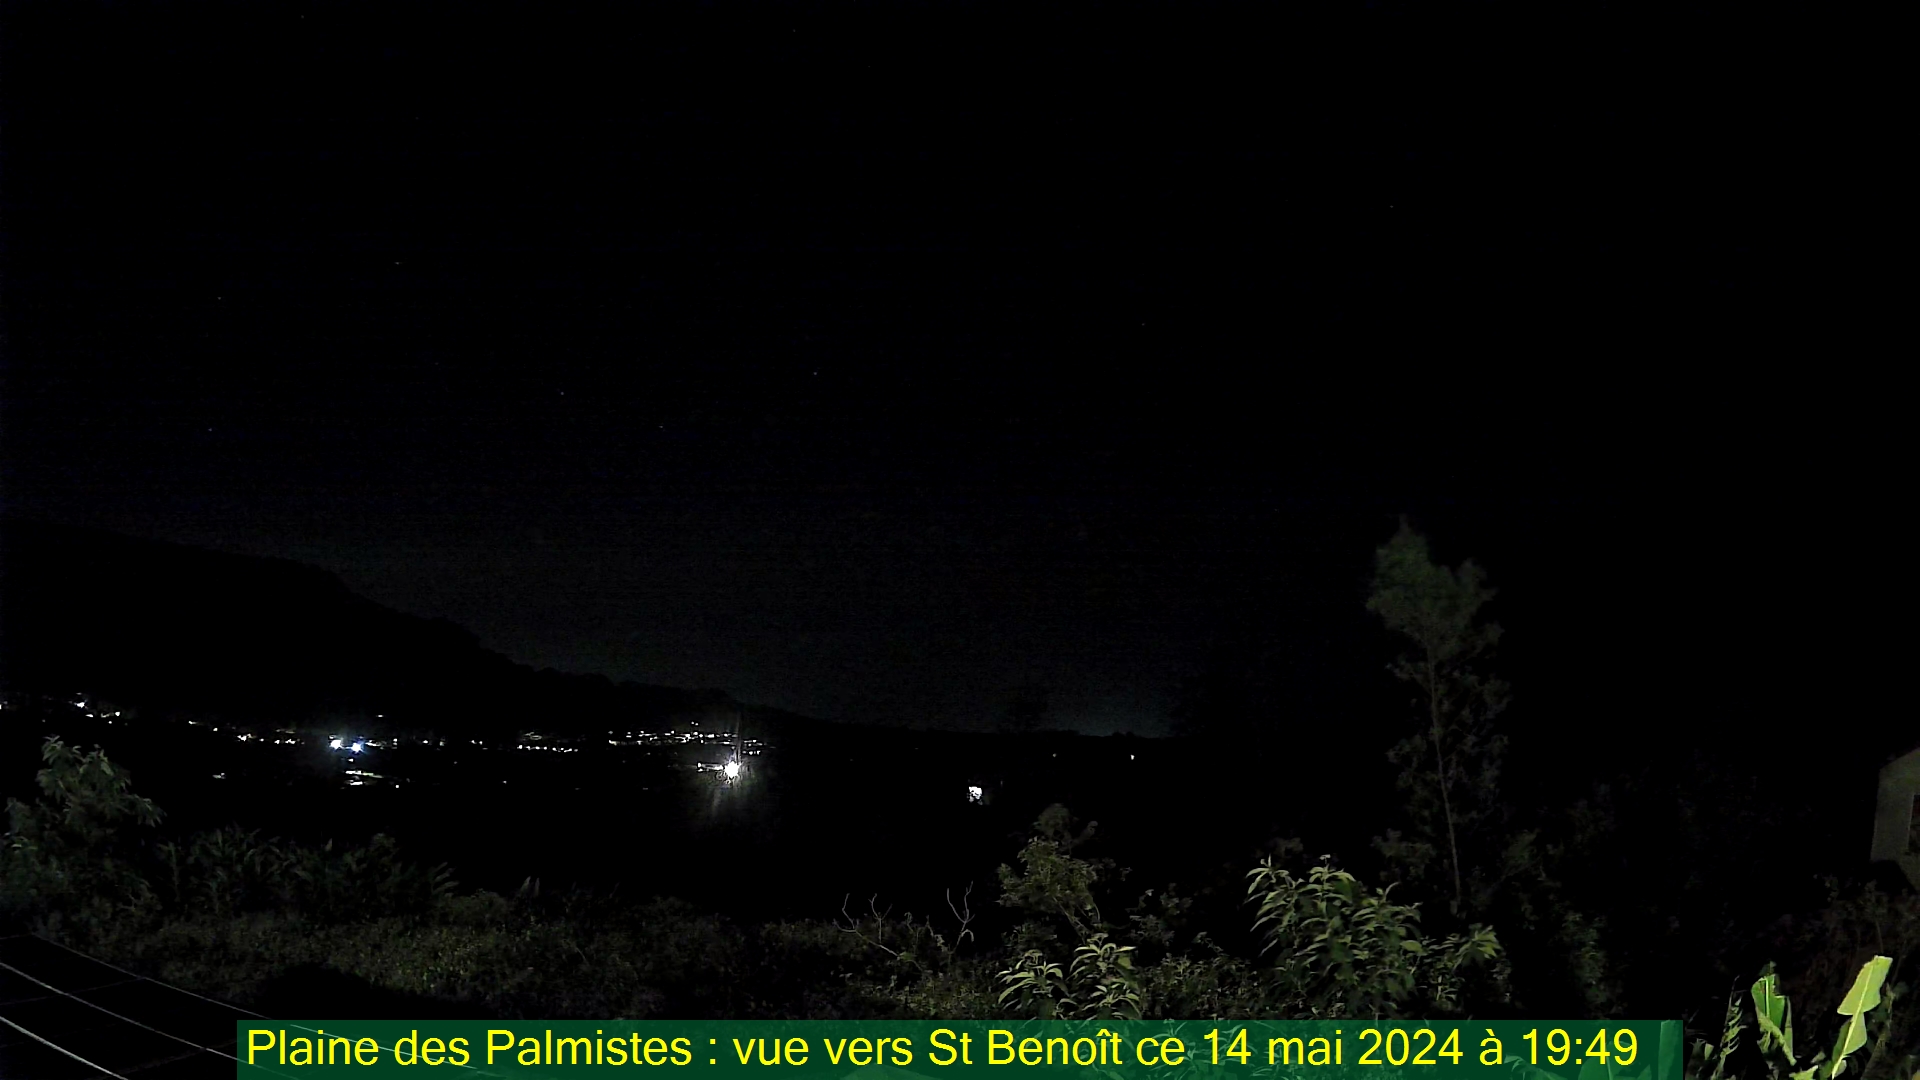 Saint-Denis (Réunion) Do. 19:50